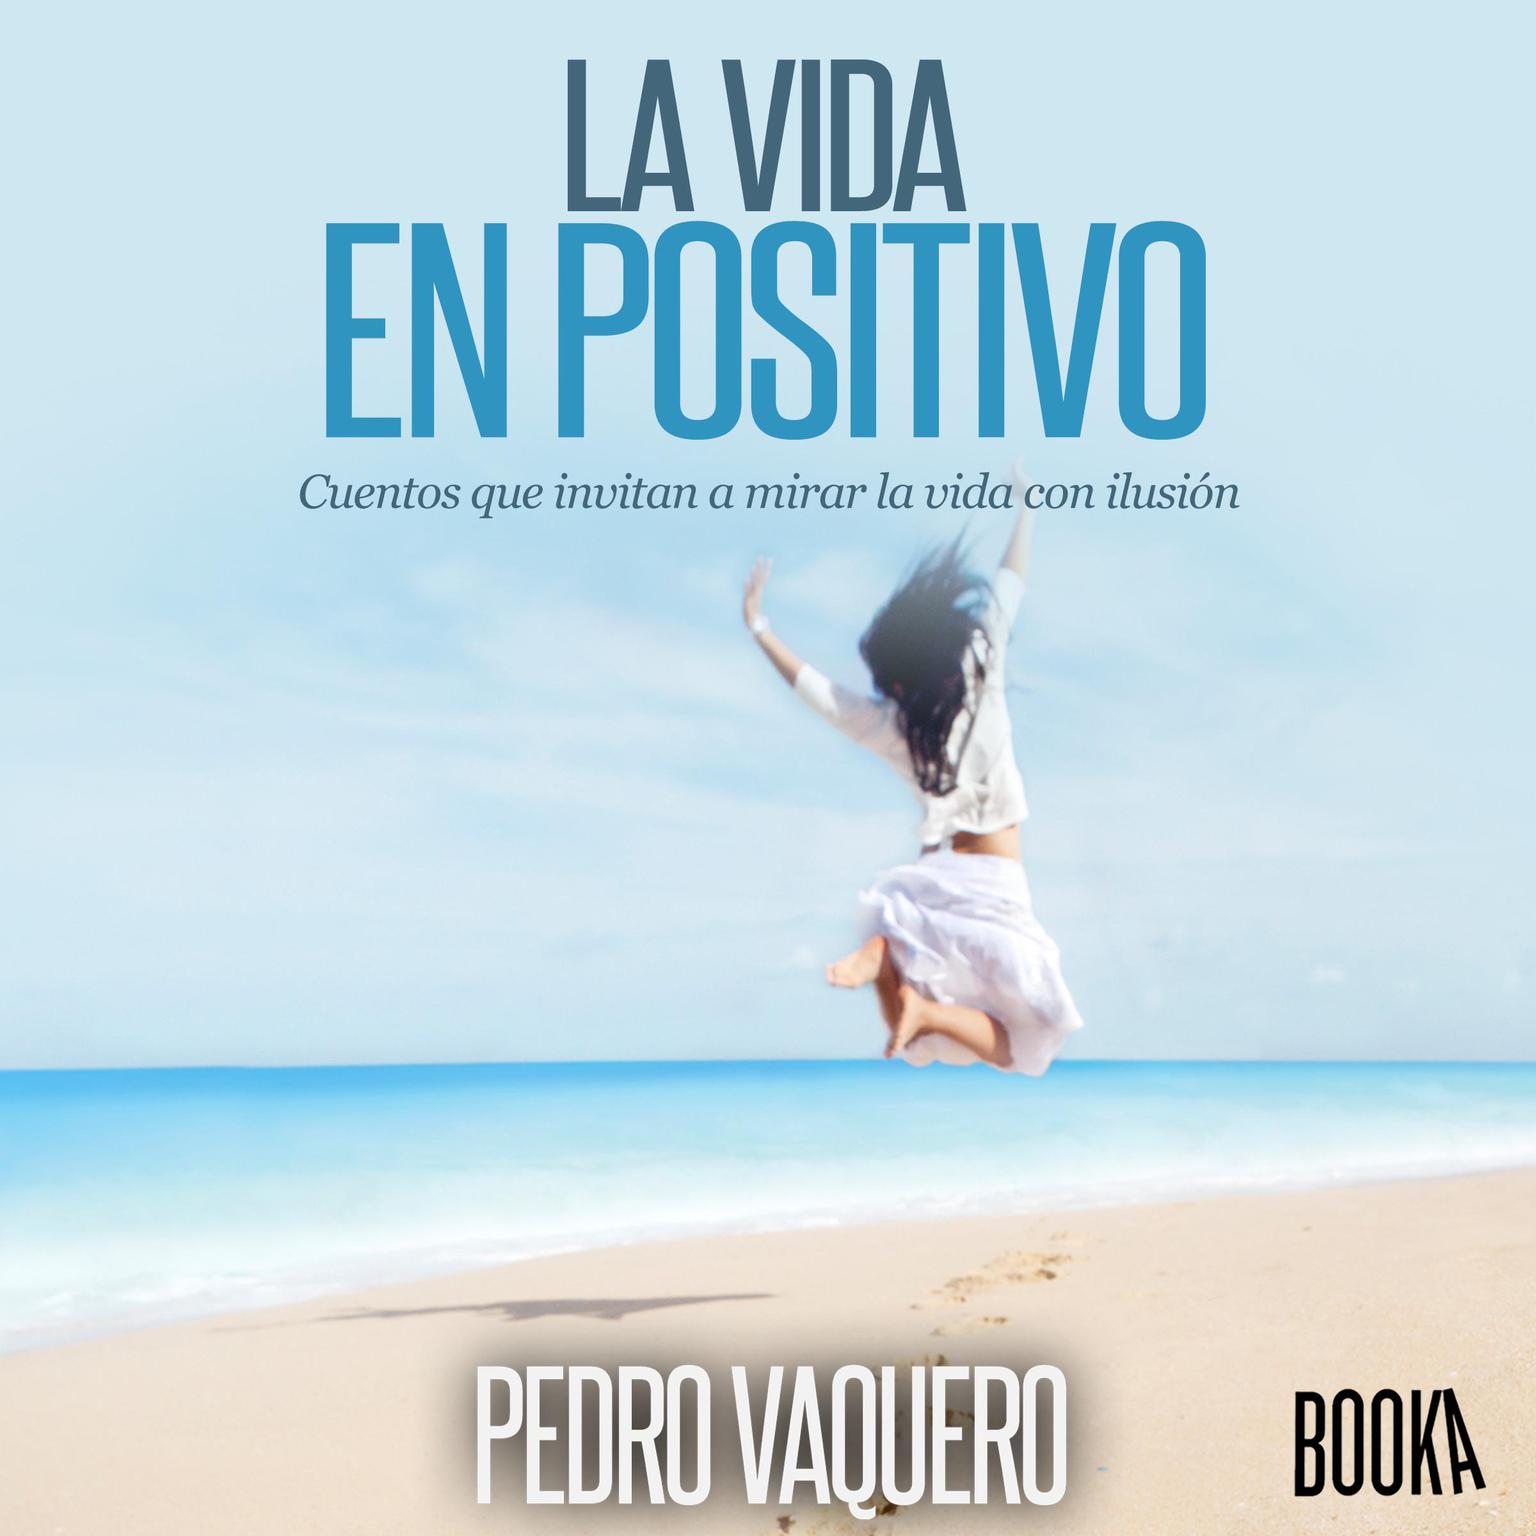 La vida en positivo: Cuentos que invitan a mirar la vida con ilusion Audiobook, by Pedro Vaquero